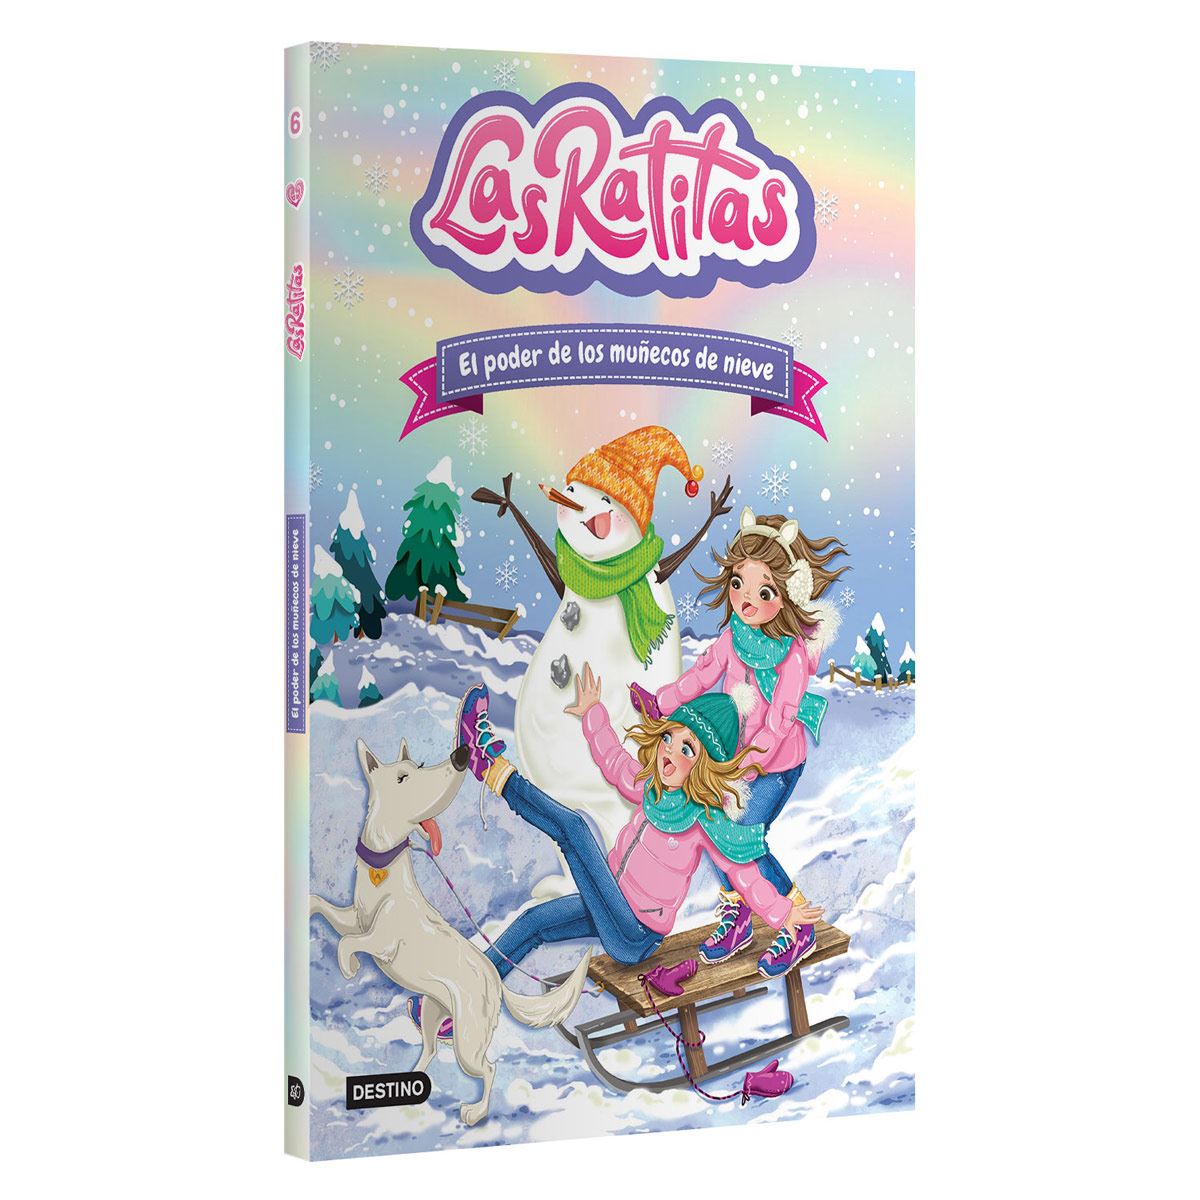 Las Ratitas 7. Cupcakes con sorpresa (Spanish Edition): Las Ratitas, Las  Ratitas: 9786073903295: : Books